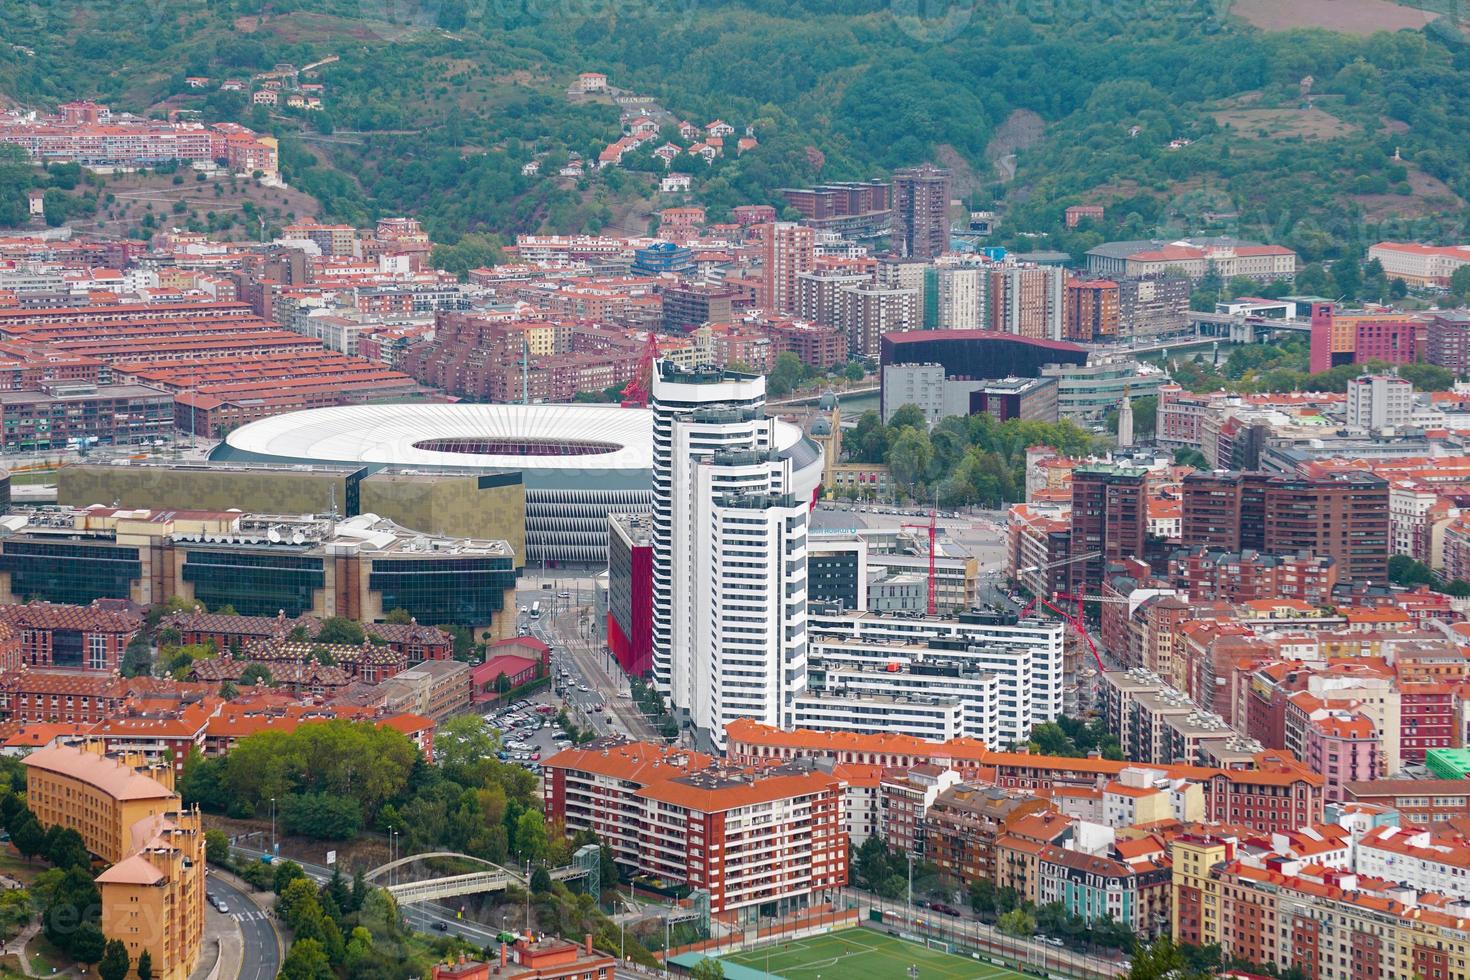 stadtbild von bilbao city, baskenland, spanien, reiseziele foto